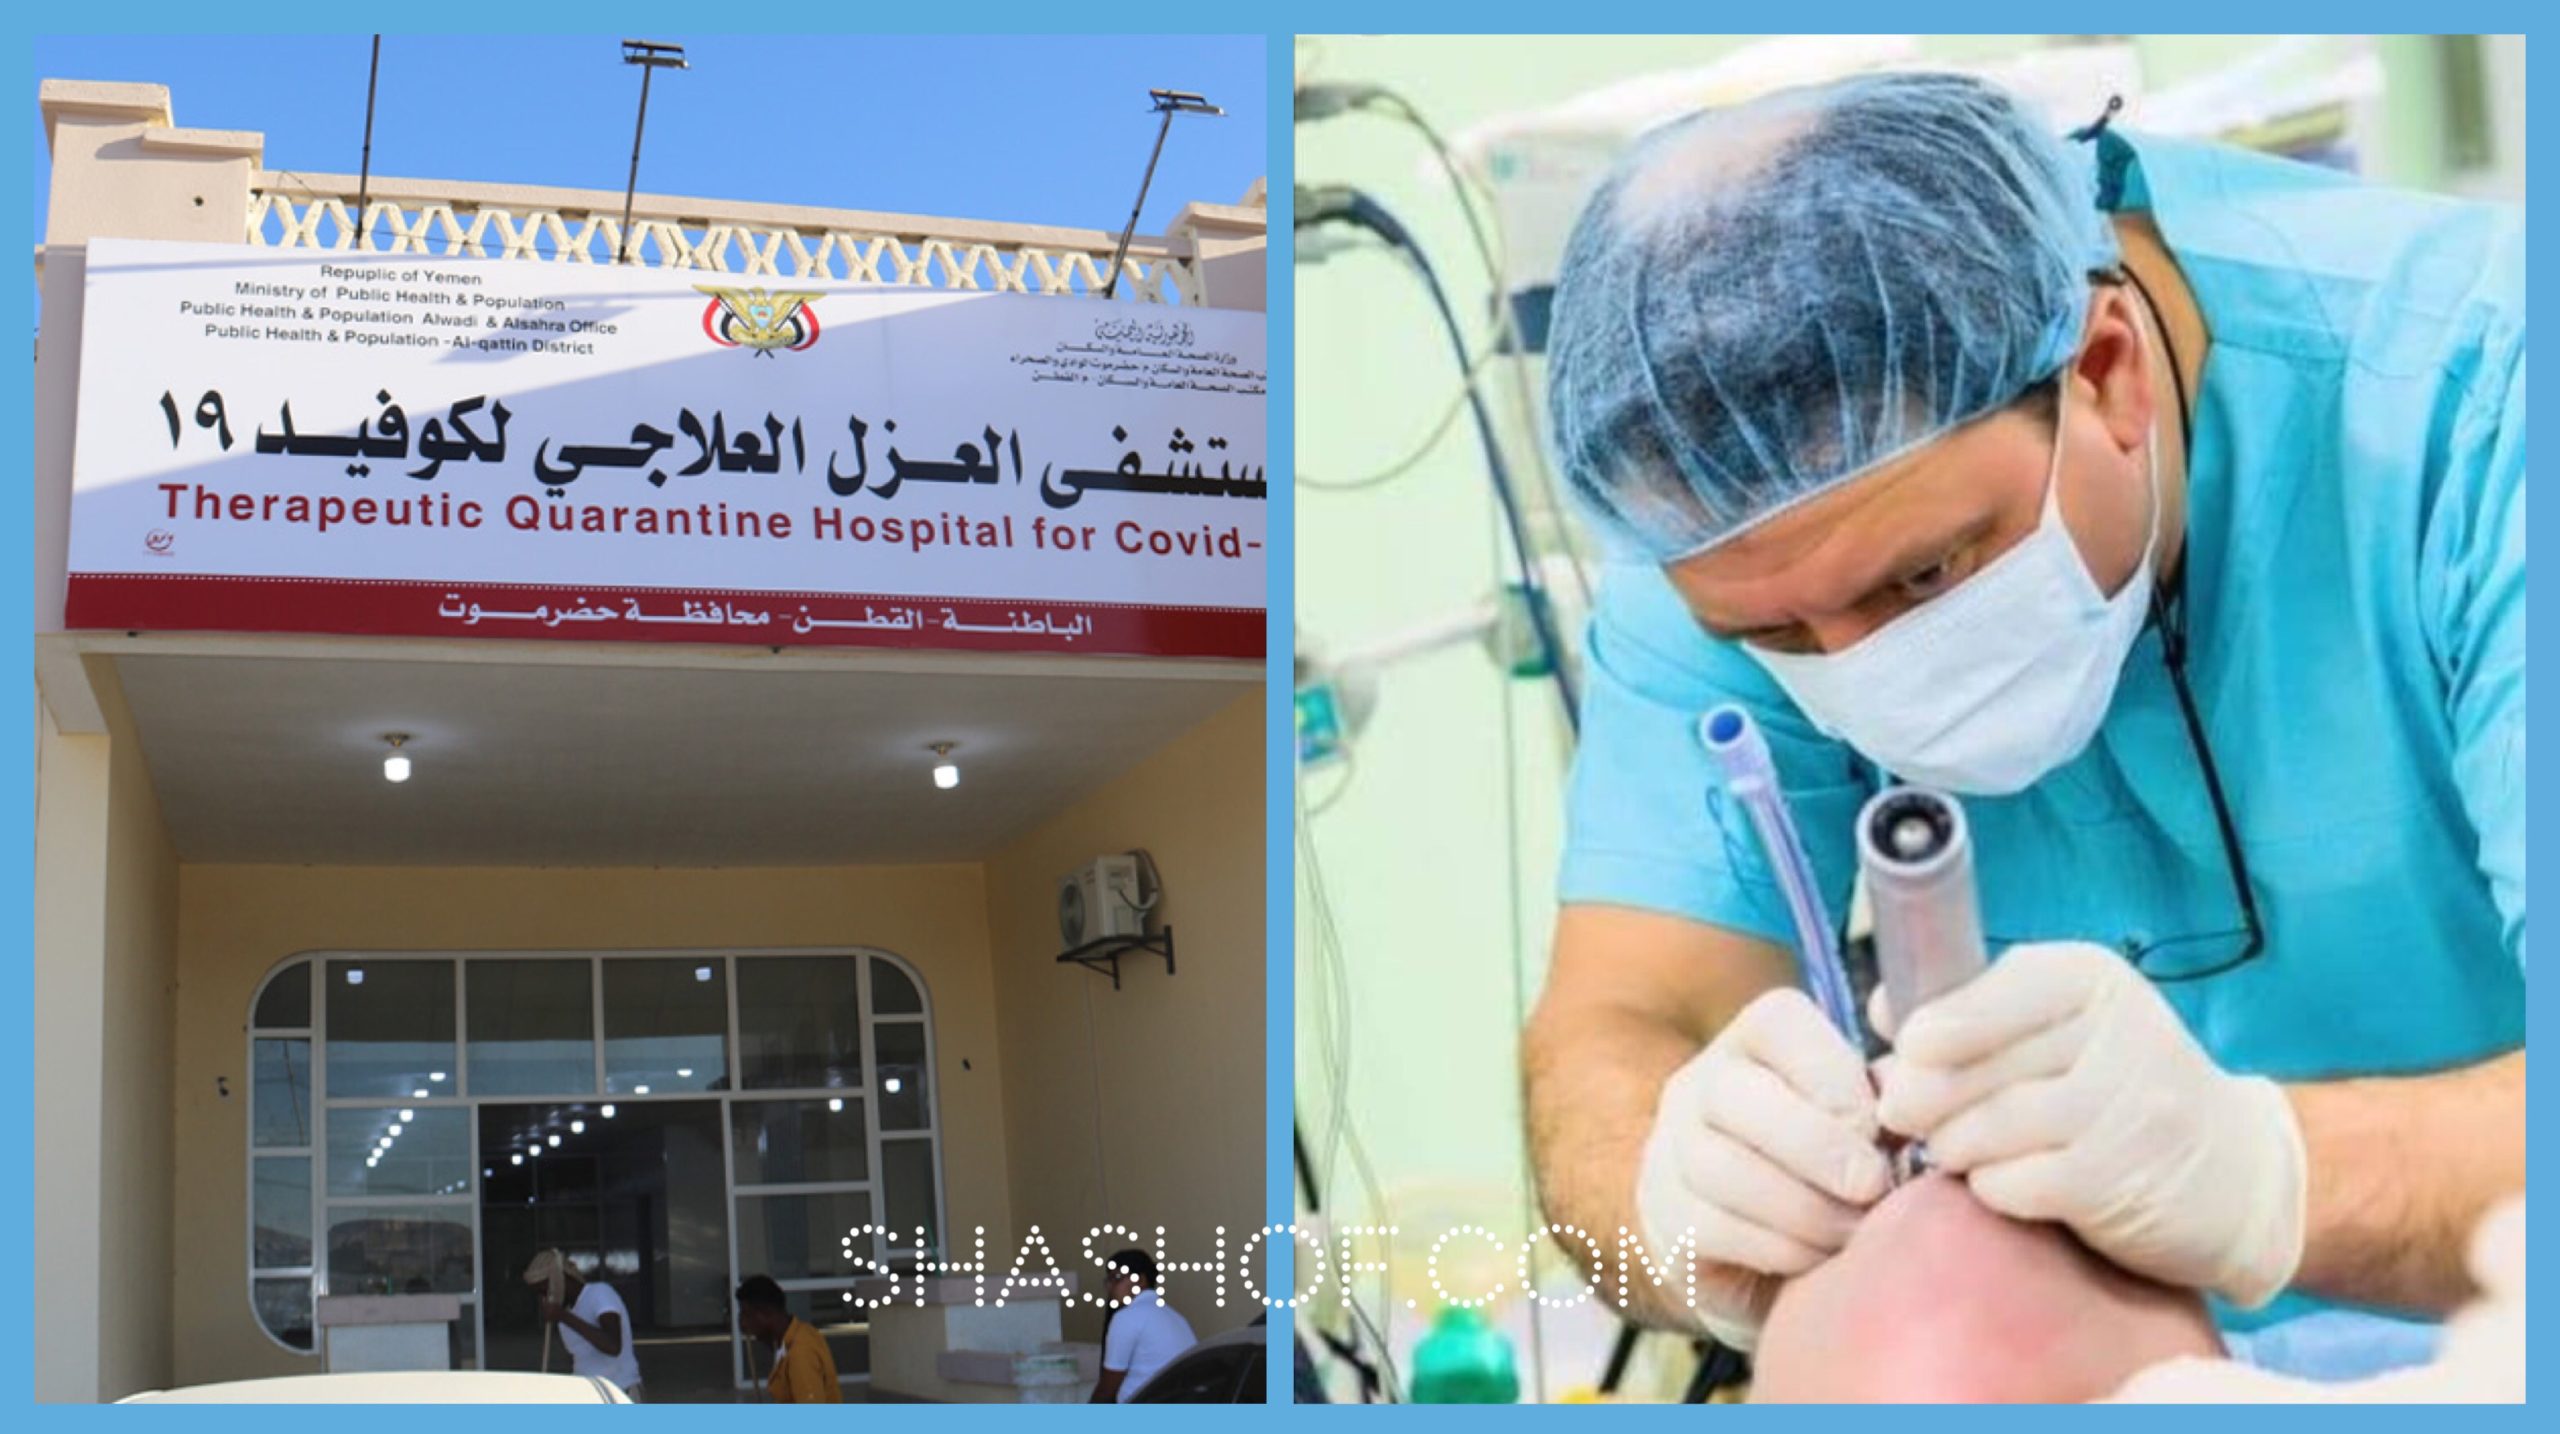 طبيب يمني يثبت أنبوب التنفس لمريض كورونا بدون وسائل الوقاية لعدم توفرها